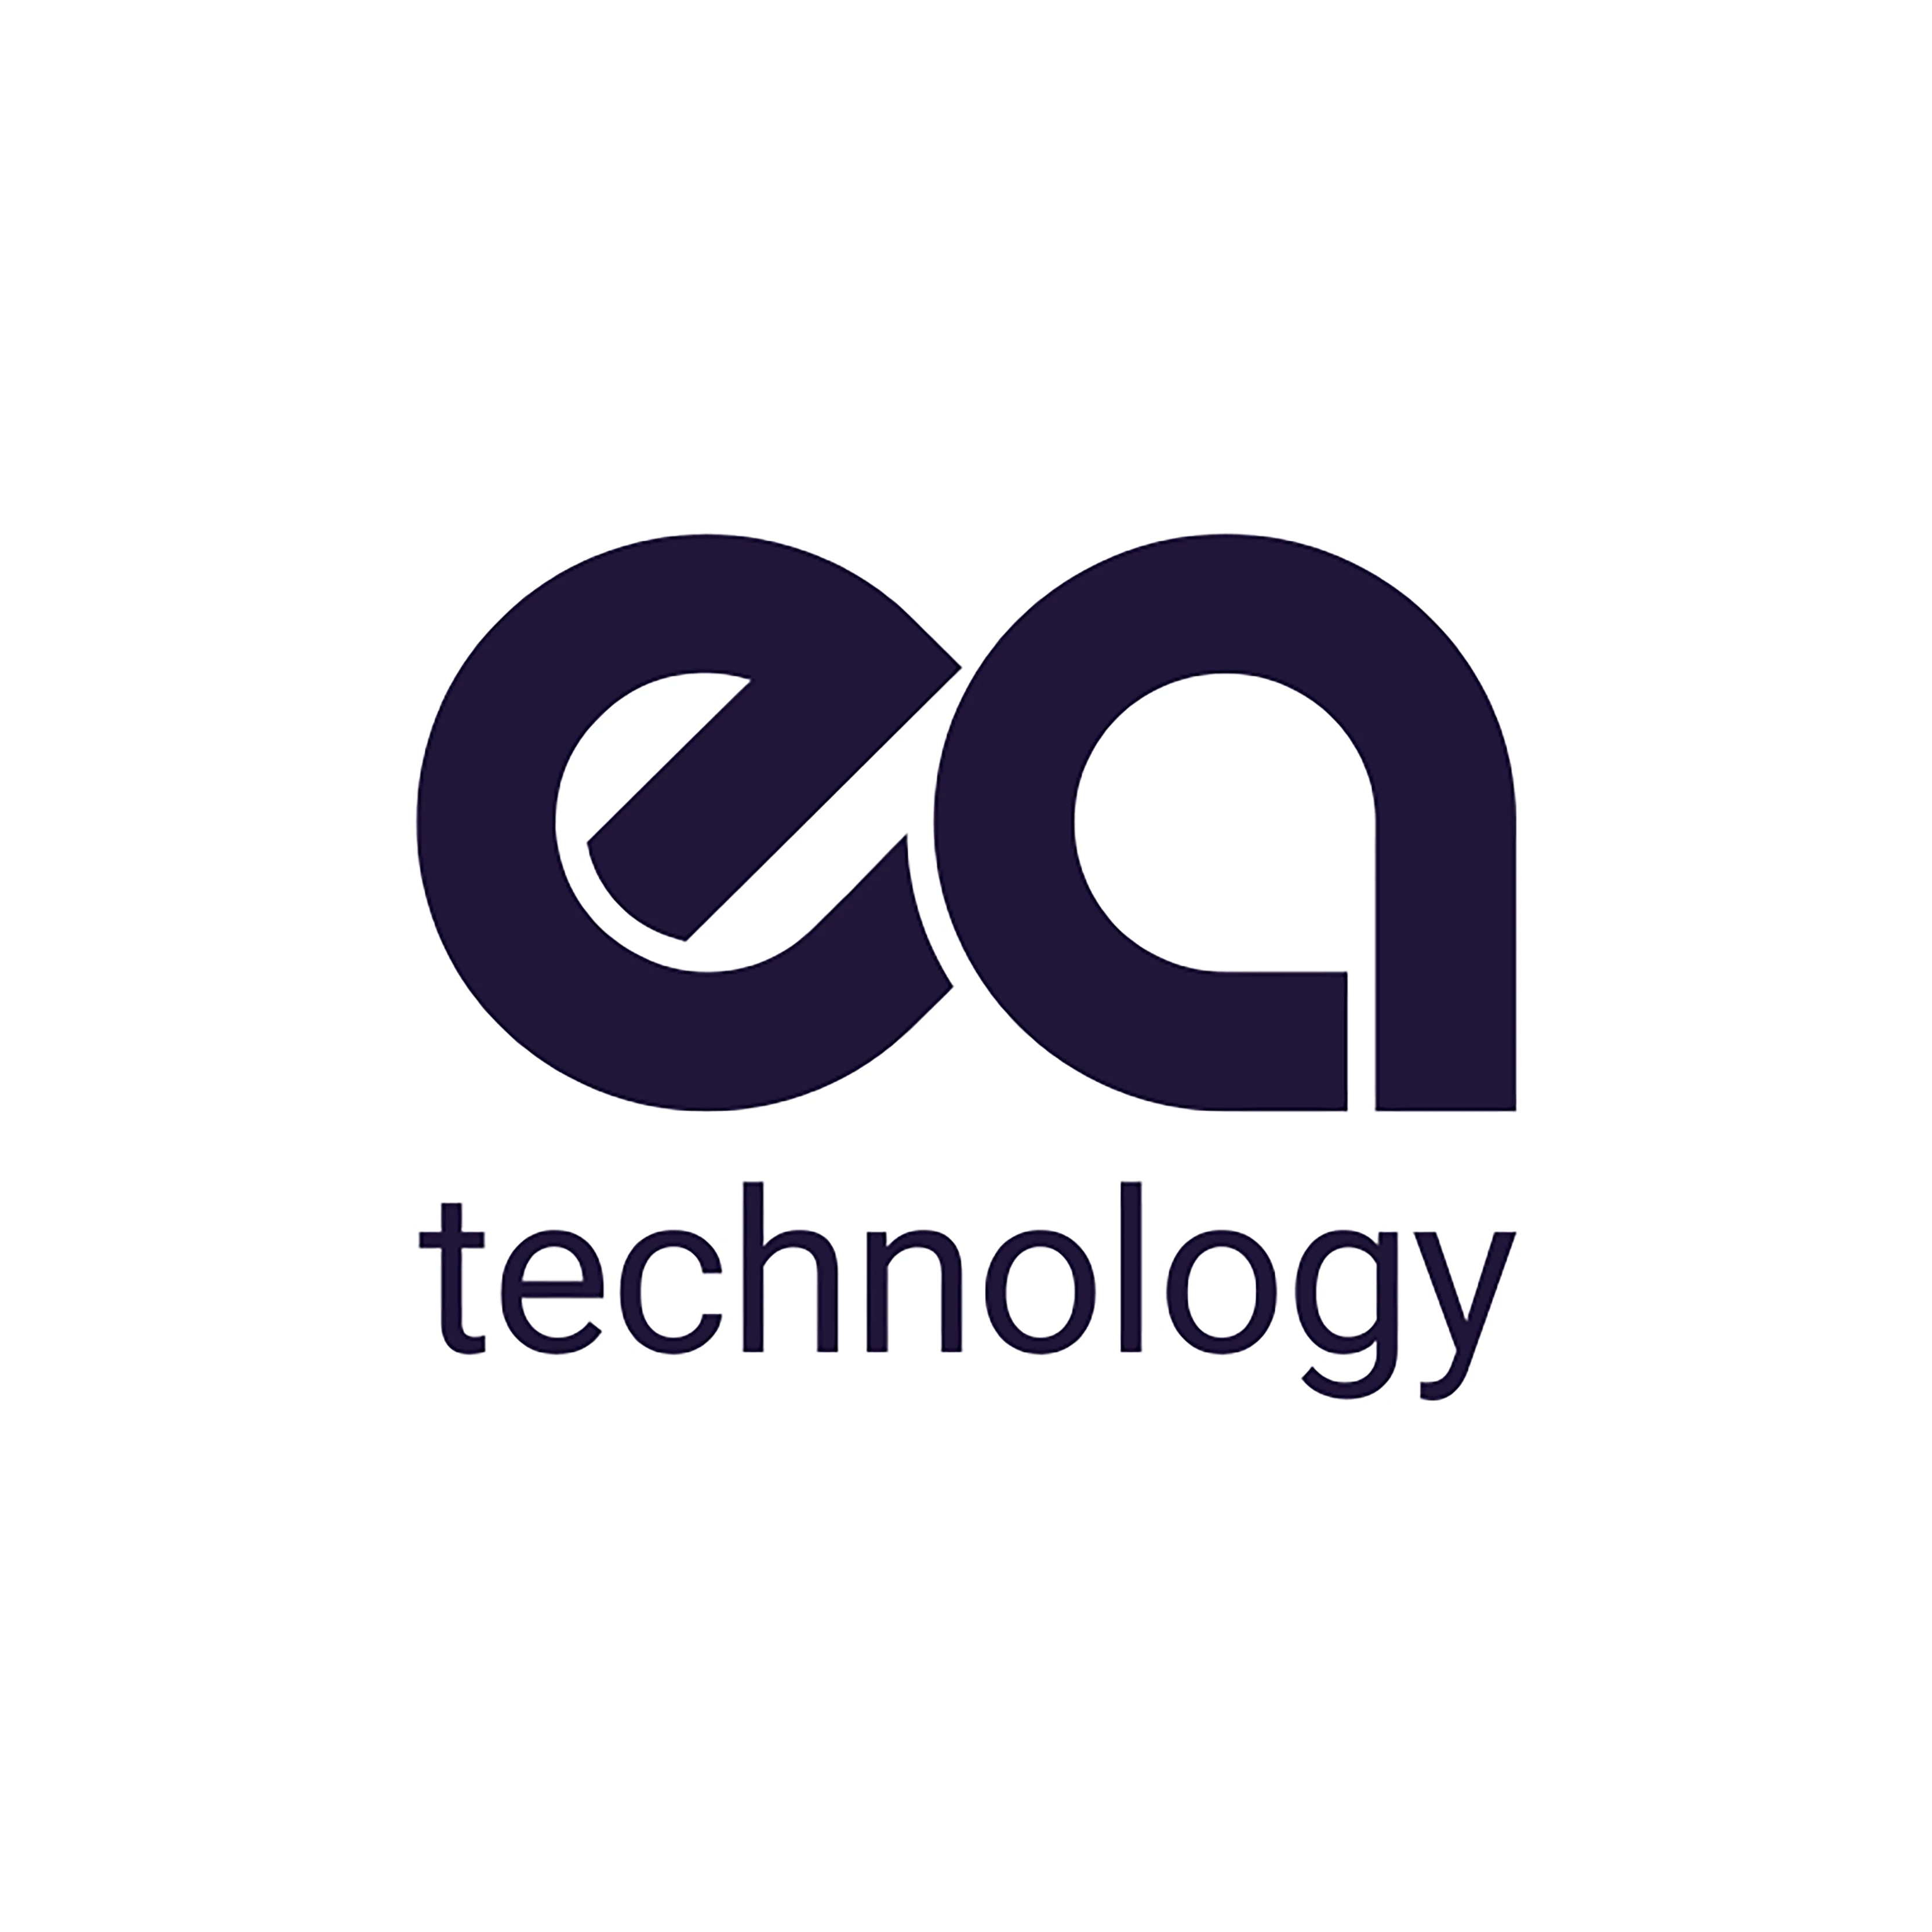 EA Technology